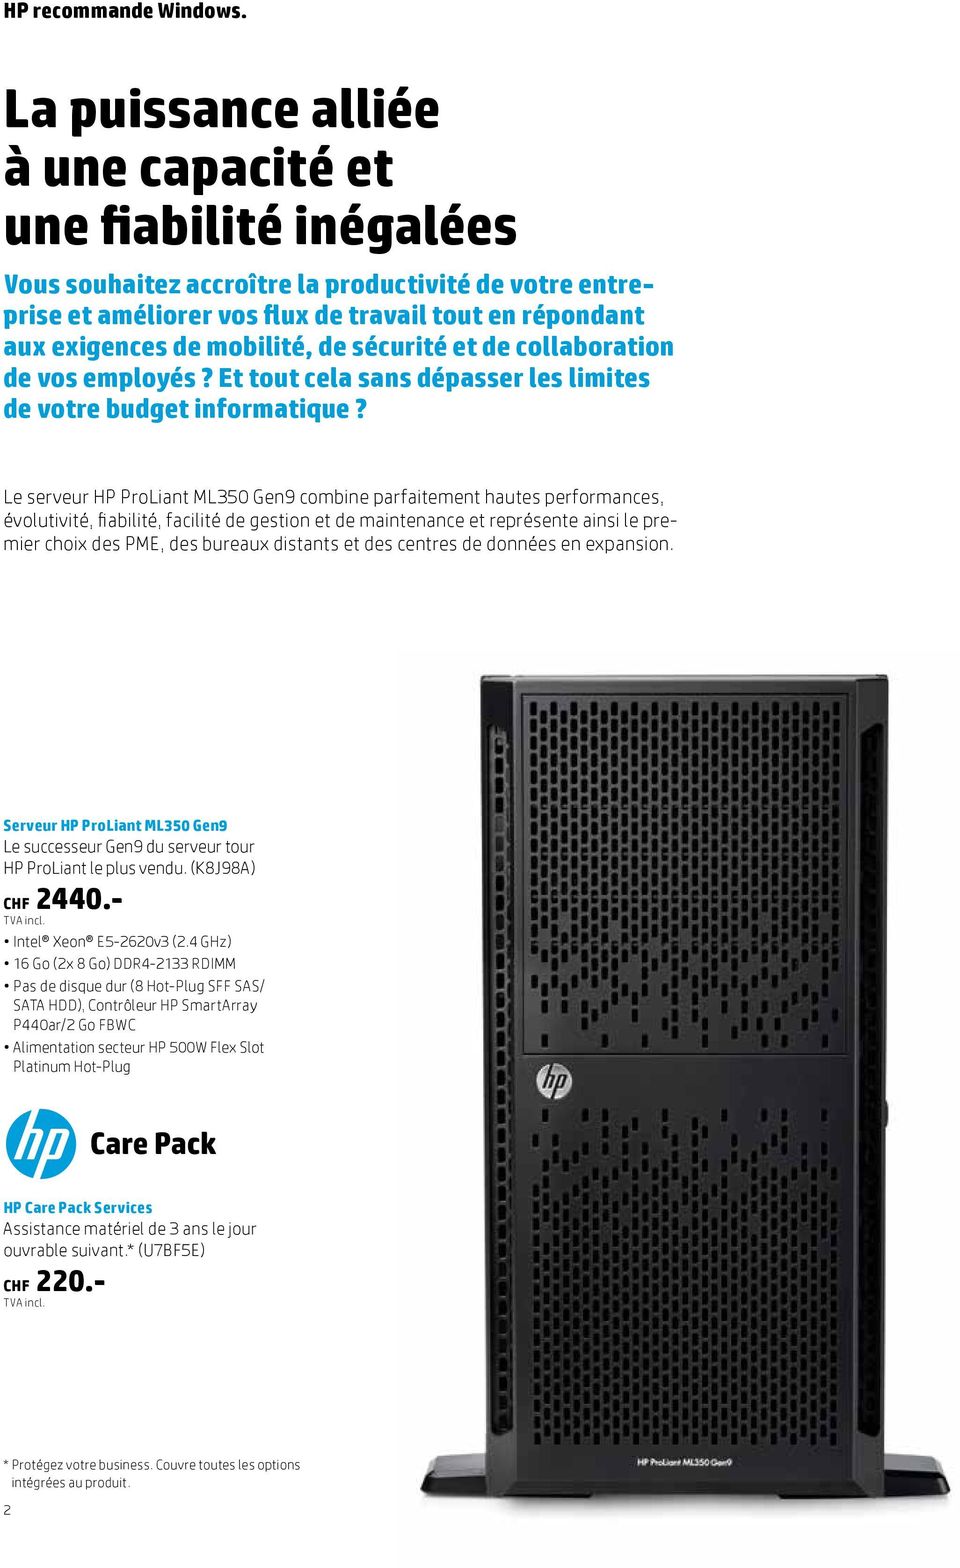 Le serveur HP ProLiant ML350 Gen9 combine parfaitement hautes performances, évolutivité, fiabilité, facilité de gestion et de maintenance et représente ainsi le premier choix des PME, des bureaux